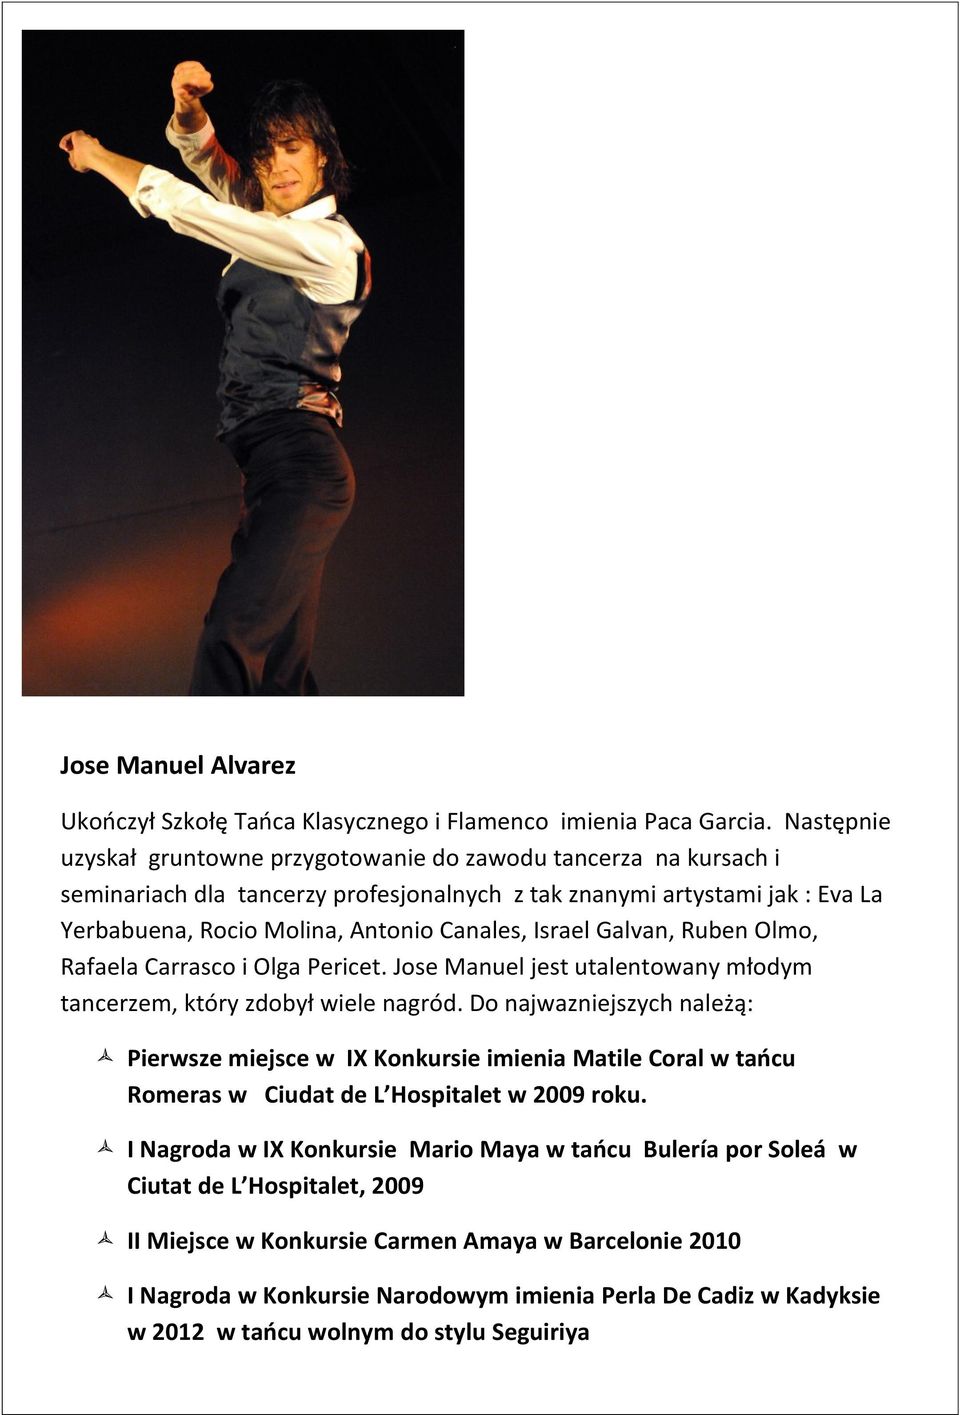 Israel Galvan, Ruben Olmo, Rafaela Carrasco i Olga Pericet. Jose Manuel jest utalentowany młodym tancerzem, który zdobył wiele nagród.